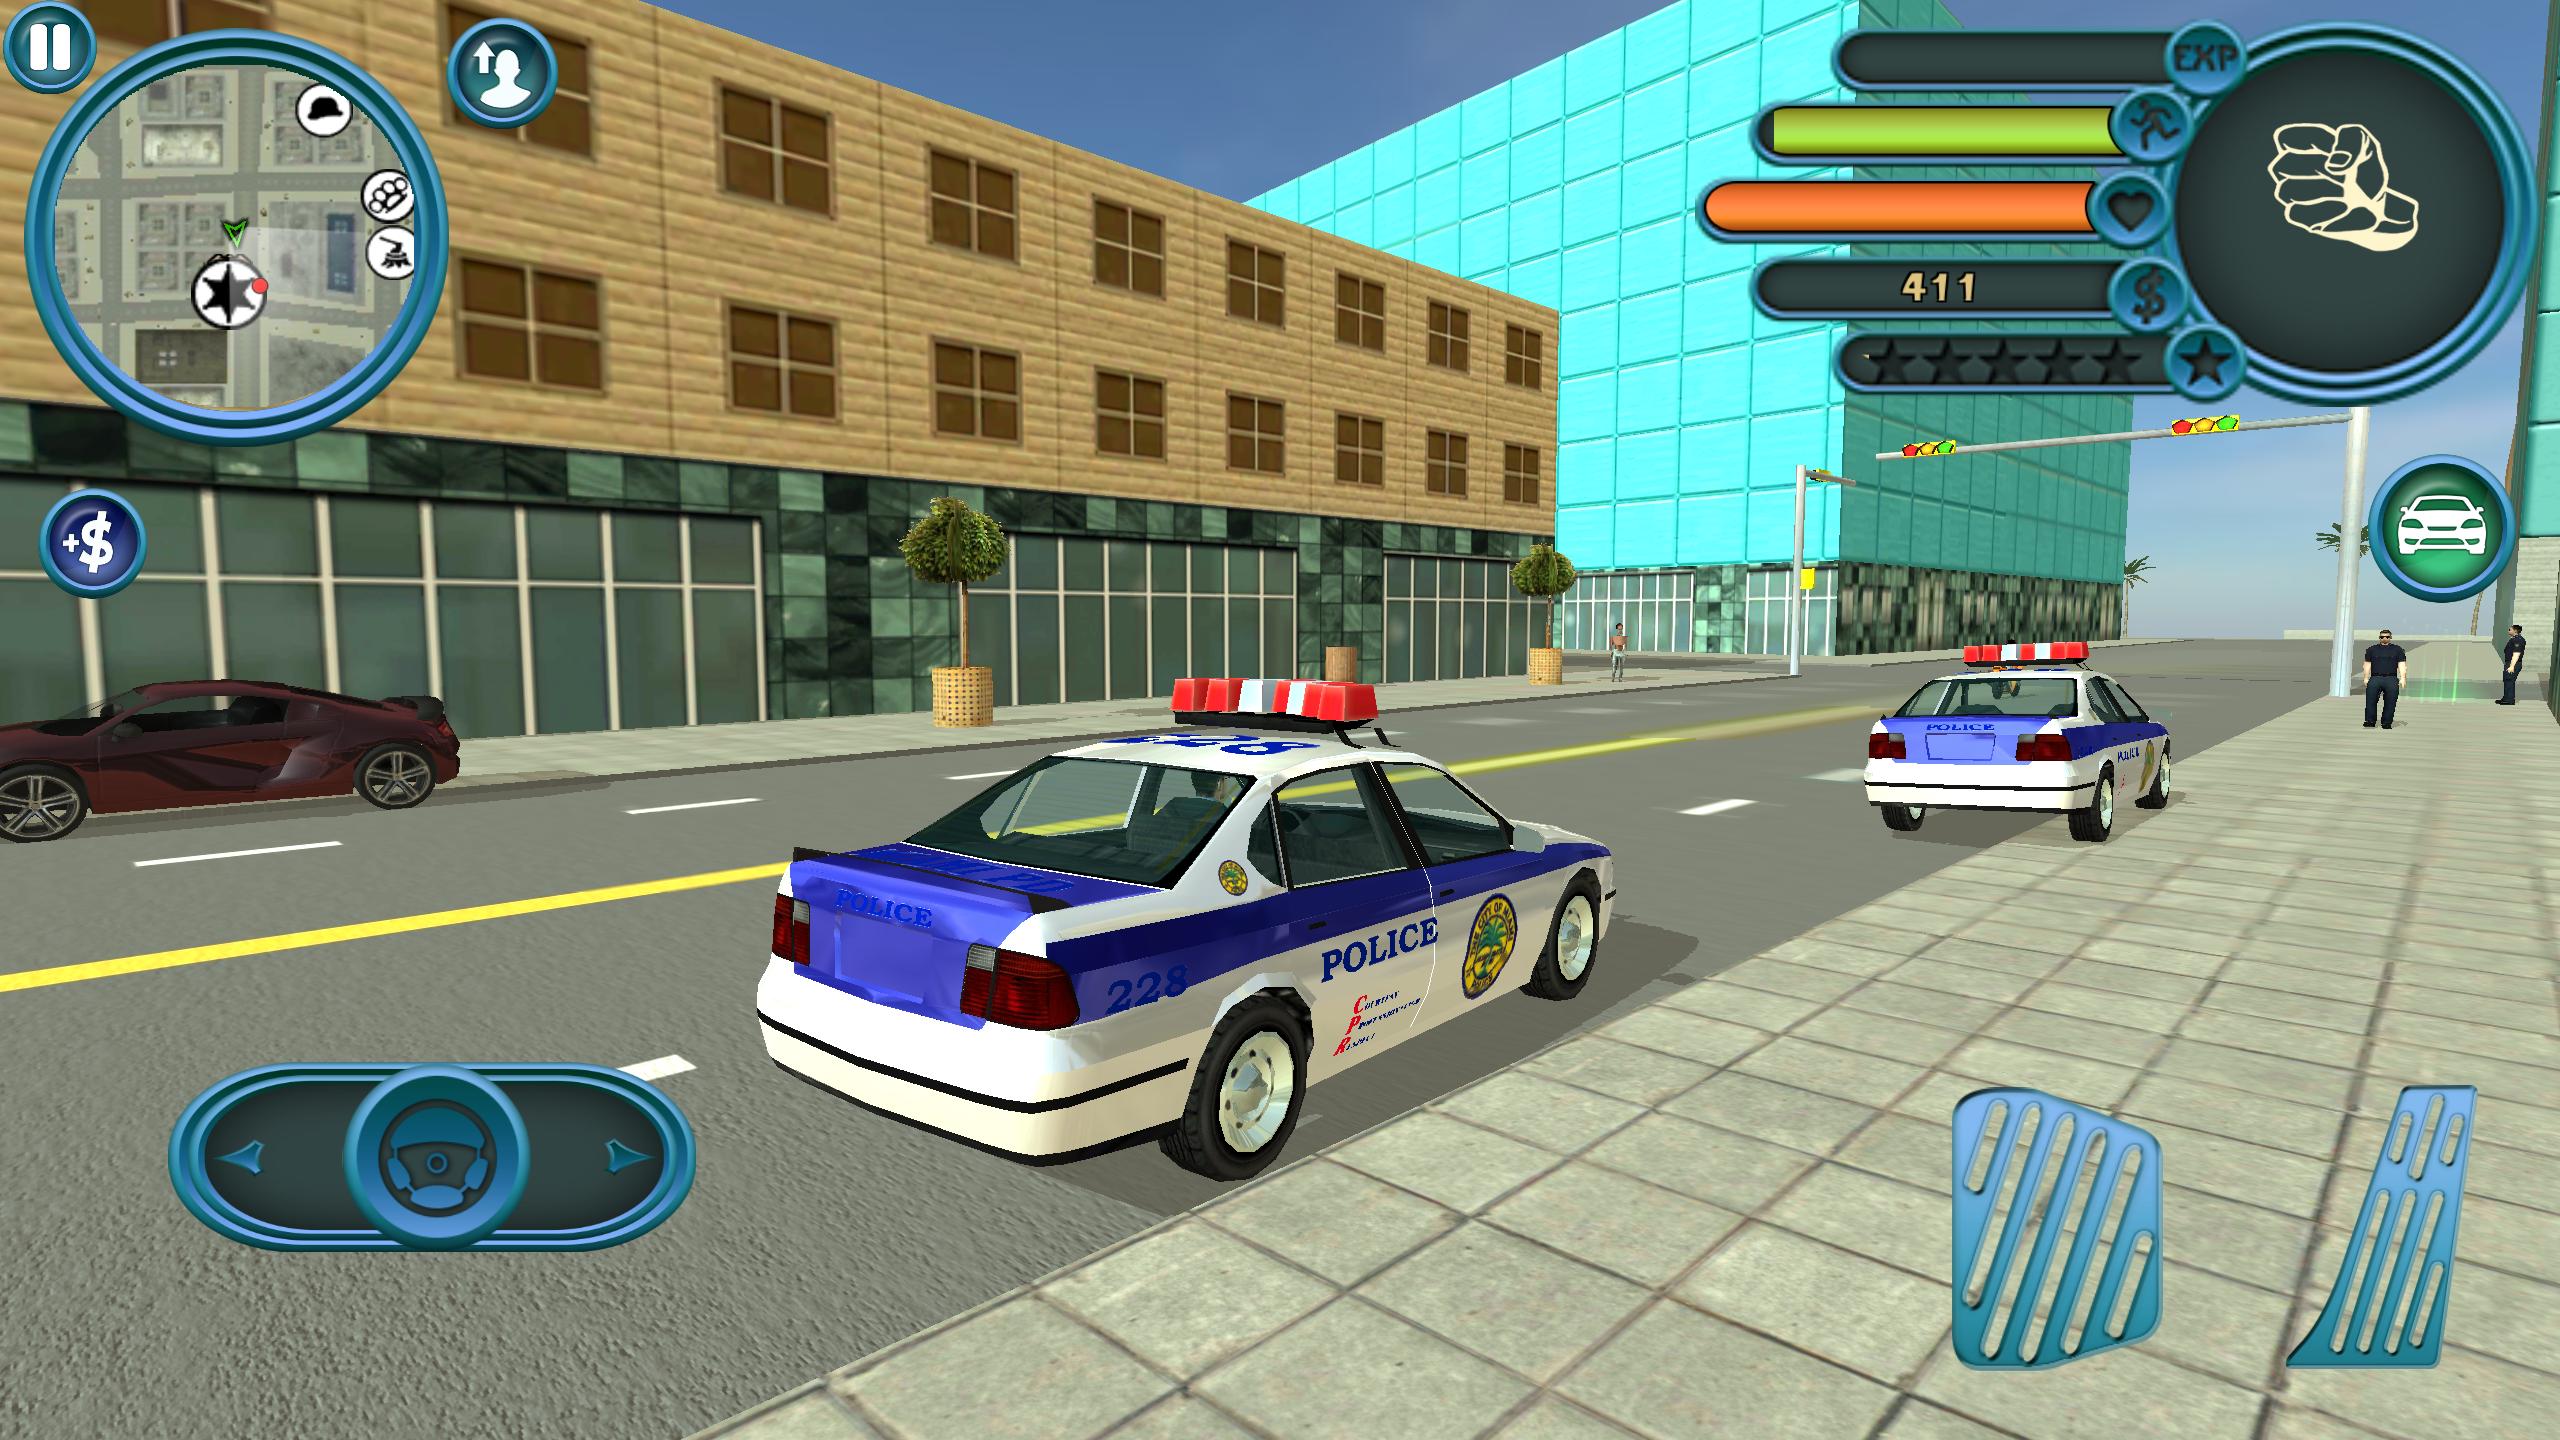 Полиция игр много денег. Miami Police игра. Игра City Police car. Полиция Майами игра на андроид. Симулятор полицейского участка.